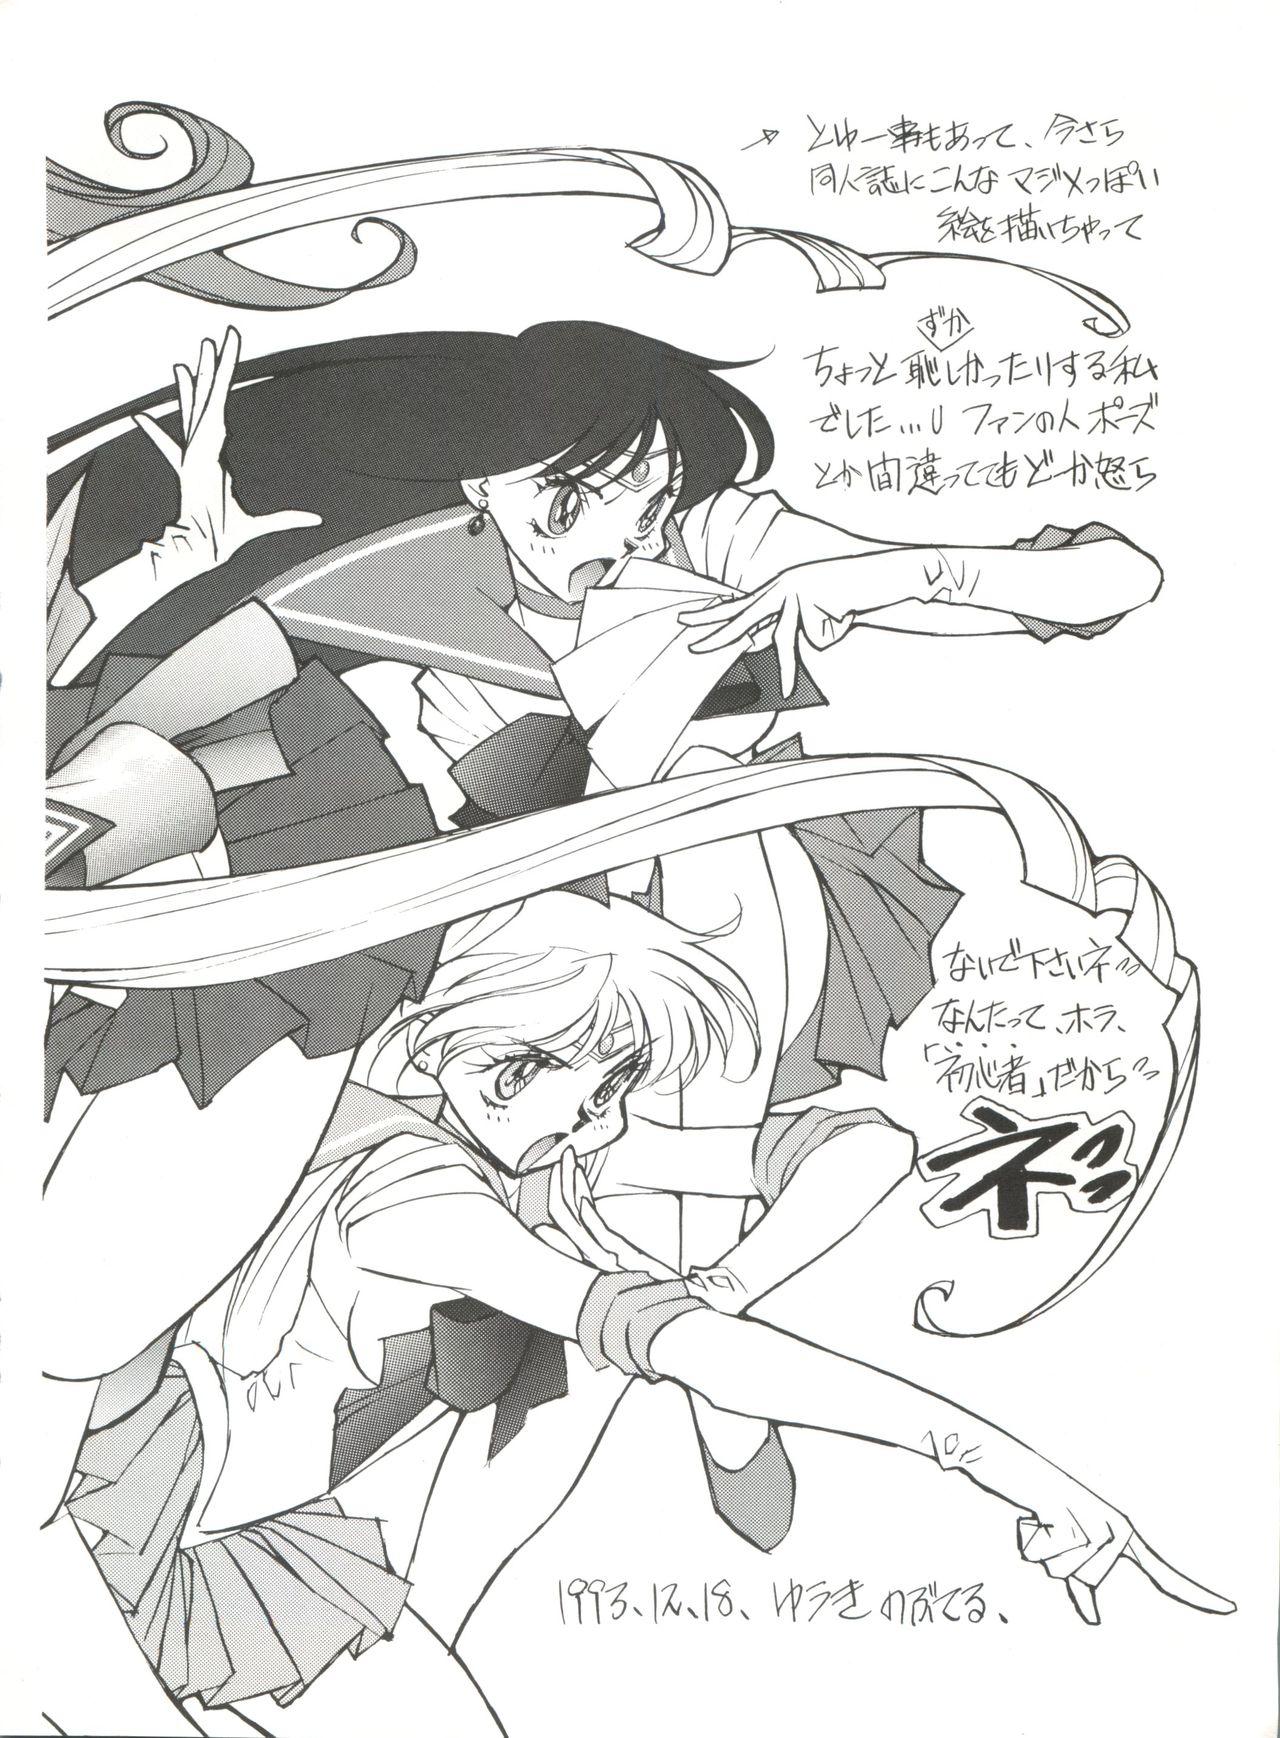 Free Hardcore Gekkou 4 - Sailor moon Spying - Page 7